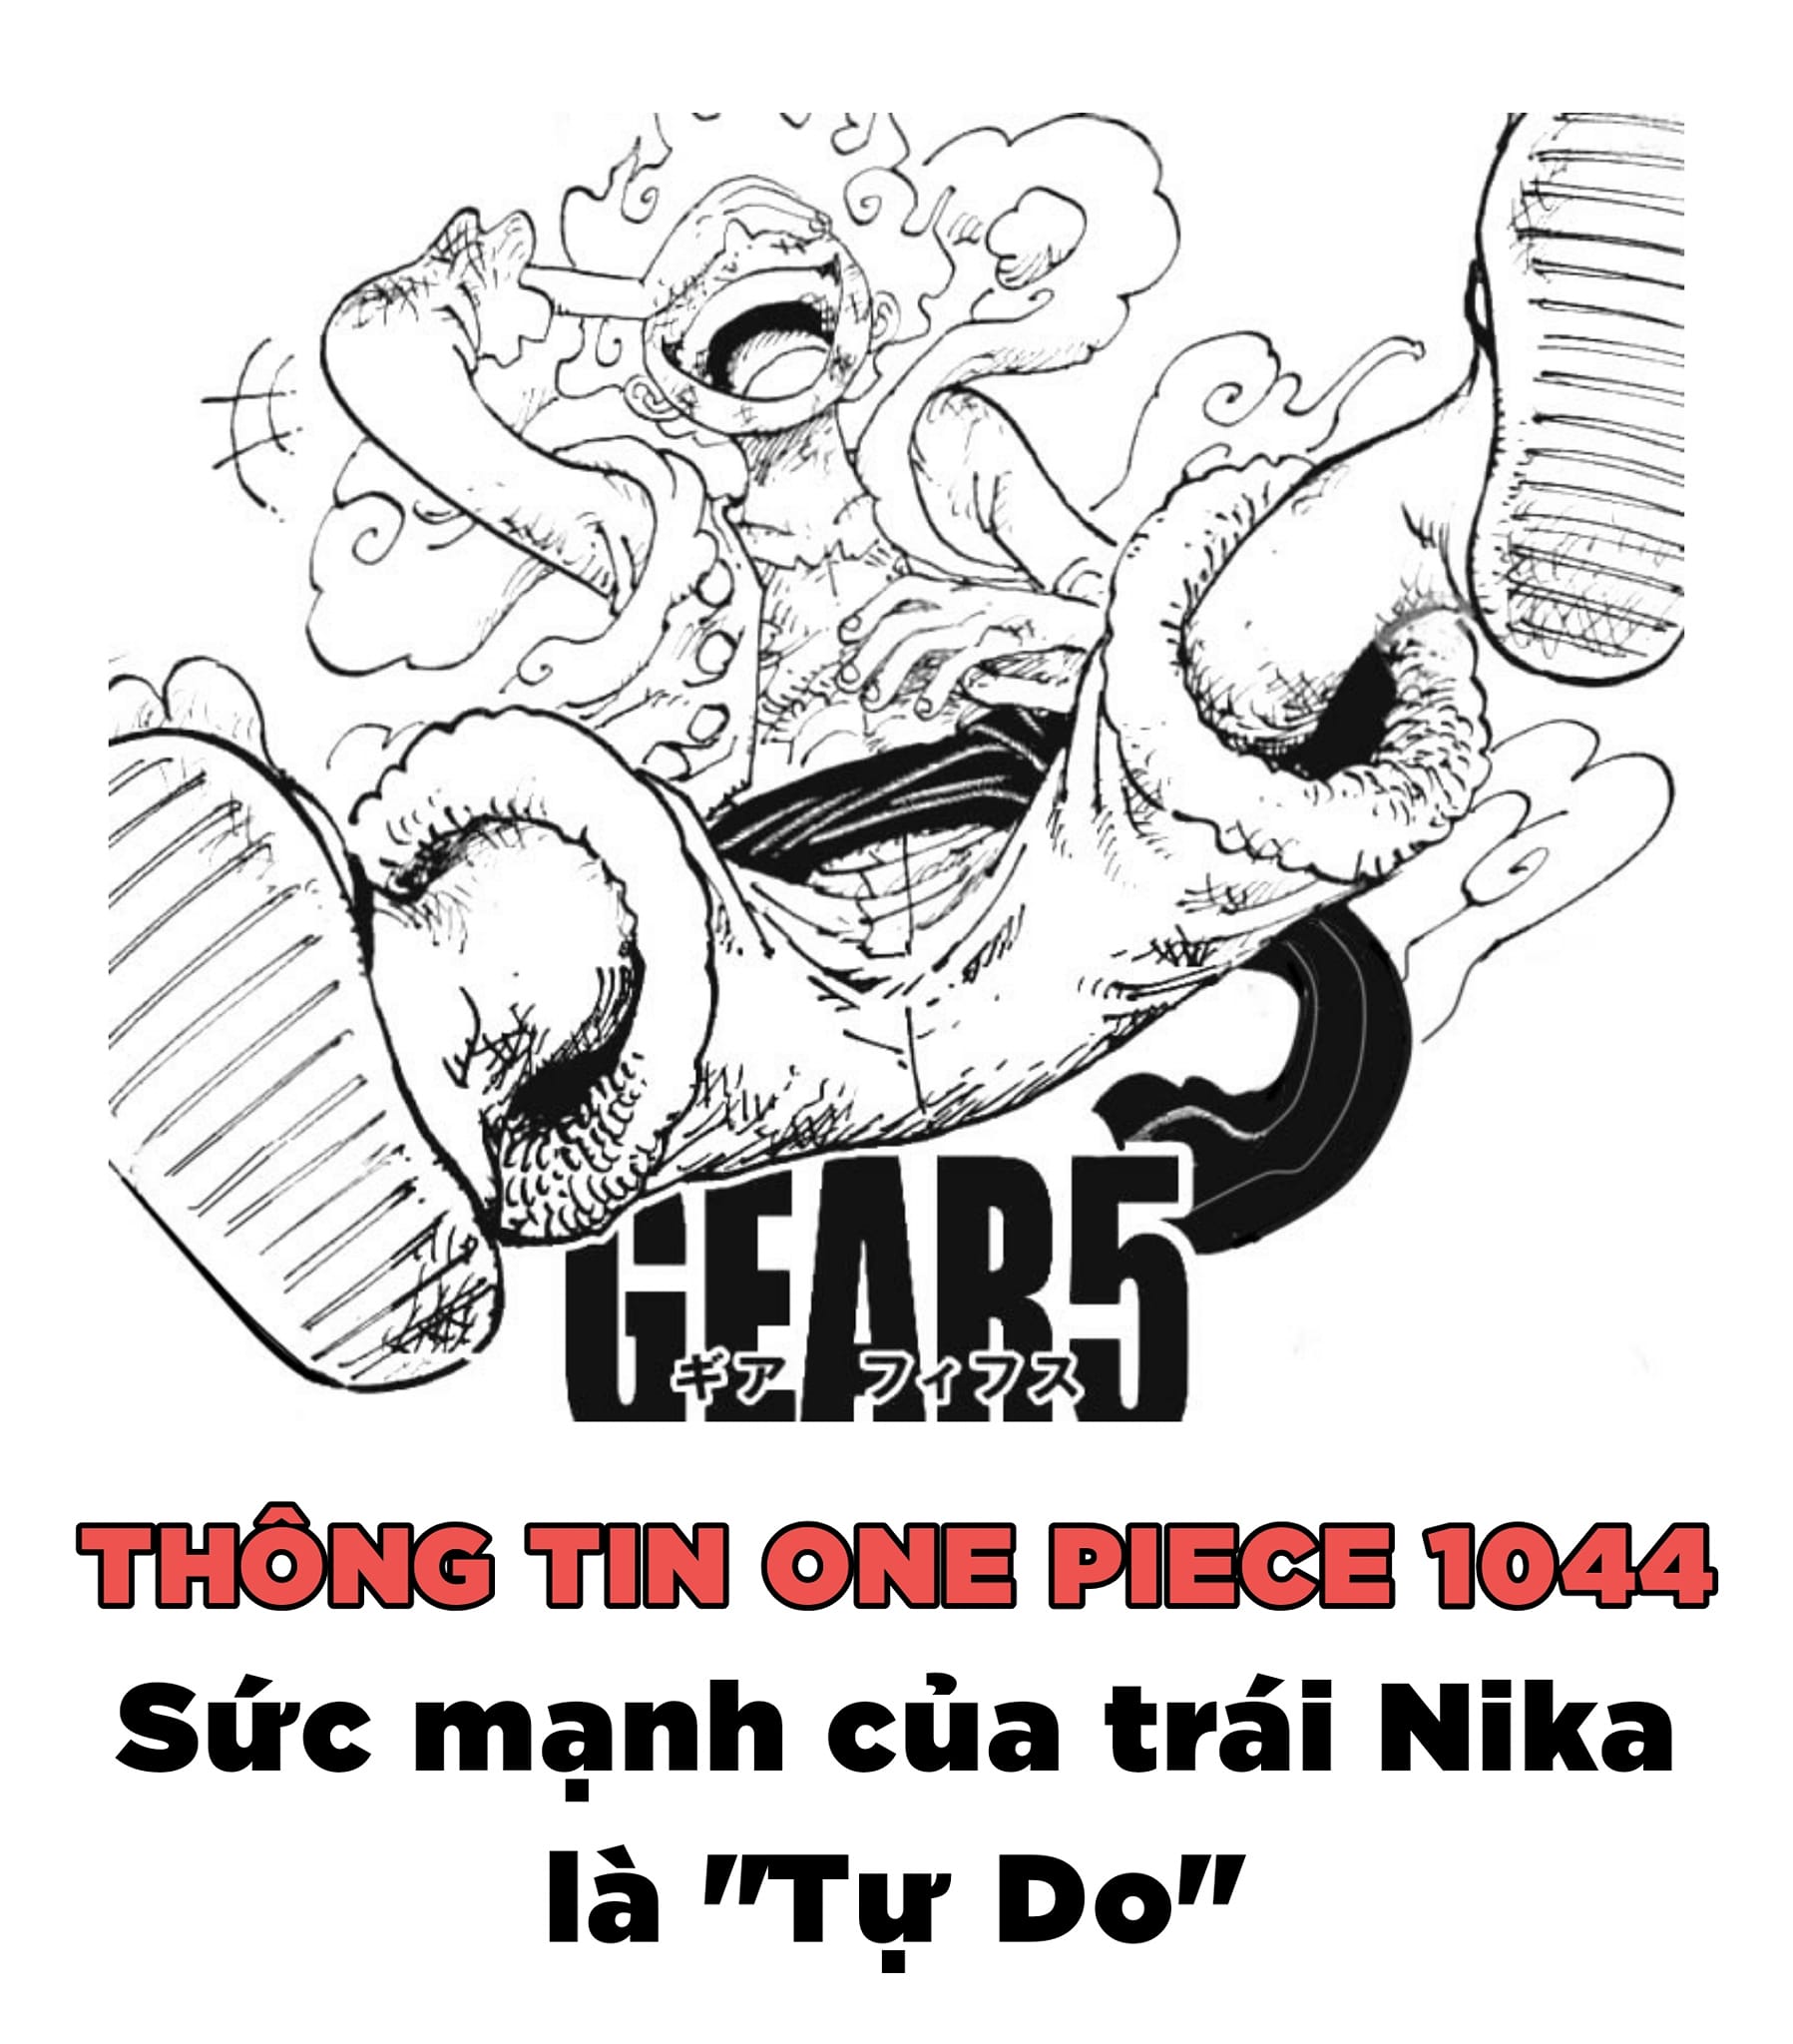 Gear 5 là chủ đề thảo luận nóng bỏng trong fanpage One Piece. Hãy đến và xem hình ảnh về Gear 5 để đánh giá khả năng và tiềm năng của sức mạnh mới này.